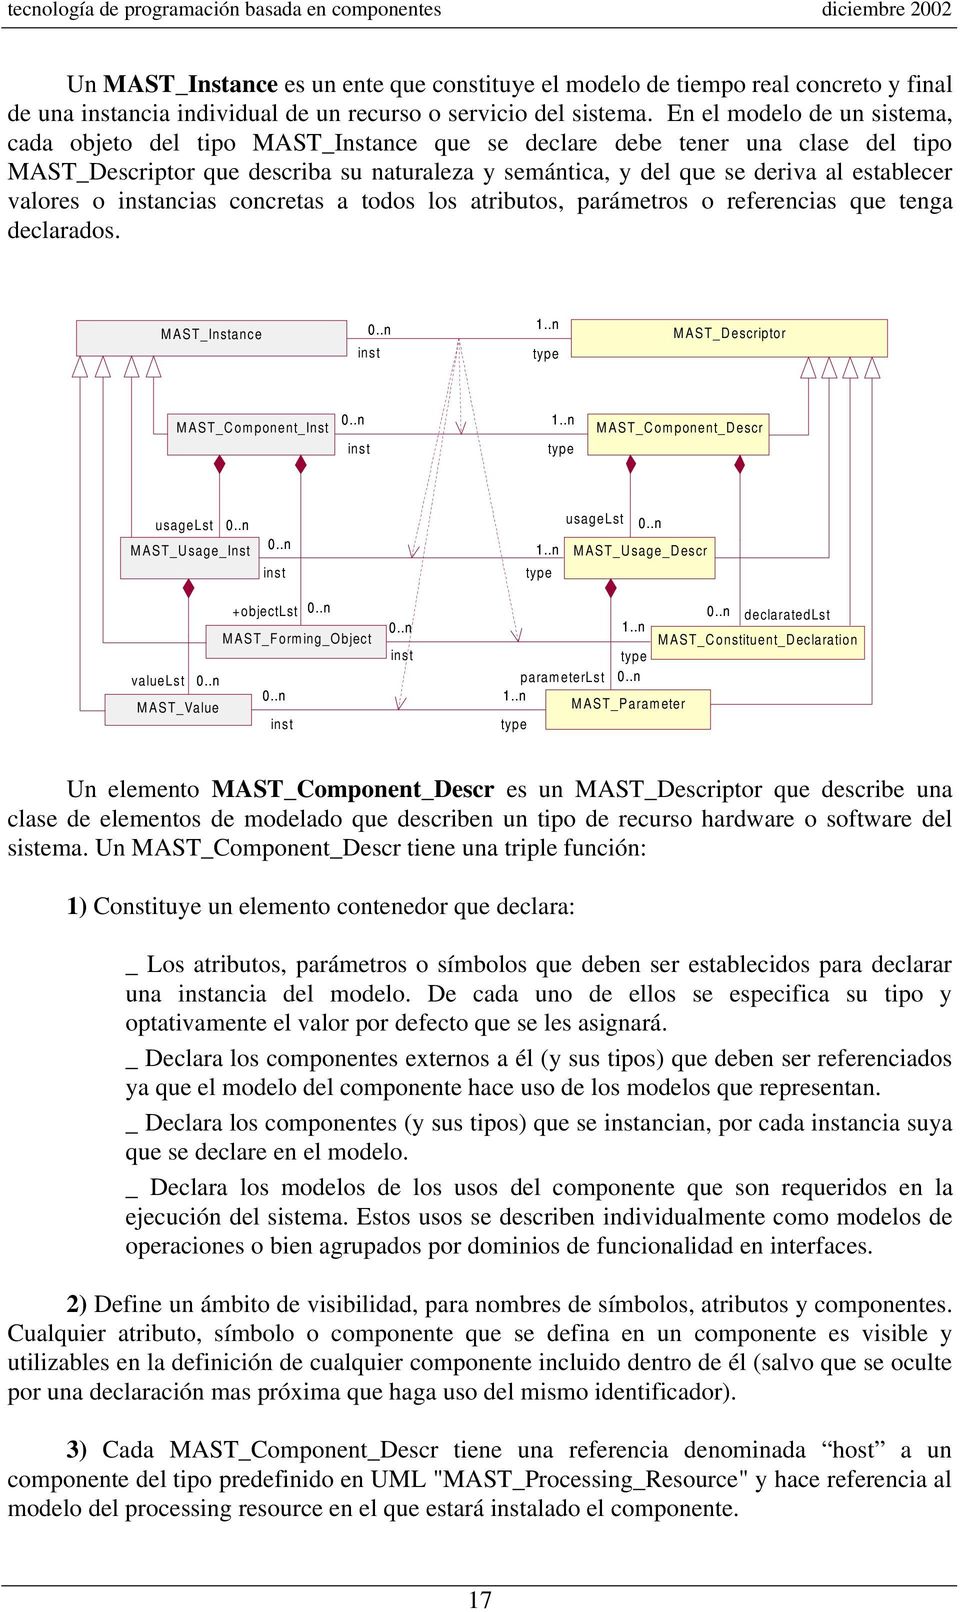 En el modelo de un sistema, cada objeto del tipo MAST_Instance que se declare debe tener una clase del tipo MAST_Descriptor que describa su naturaleza y semántica, y del que se deriva al establecer